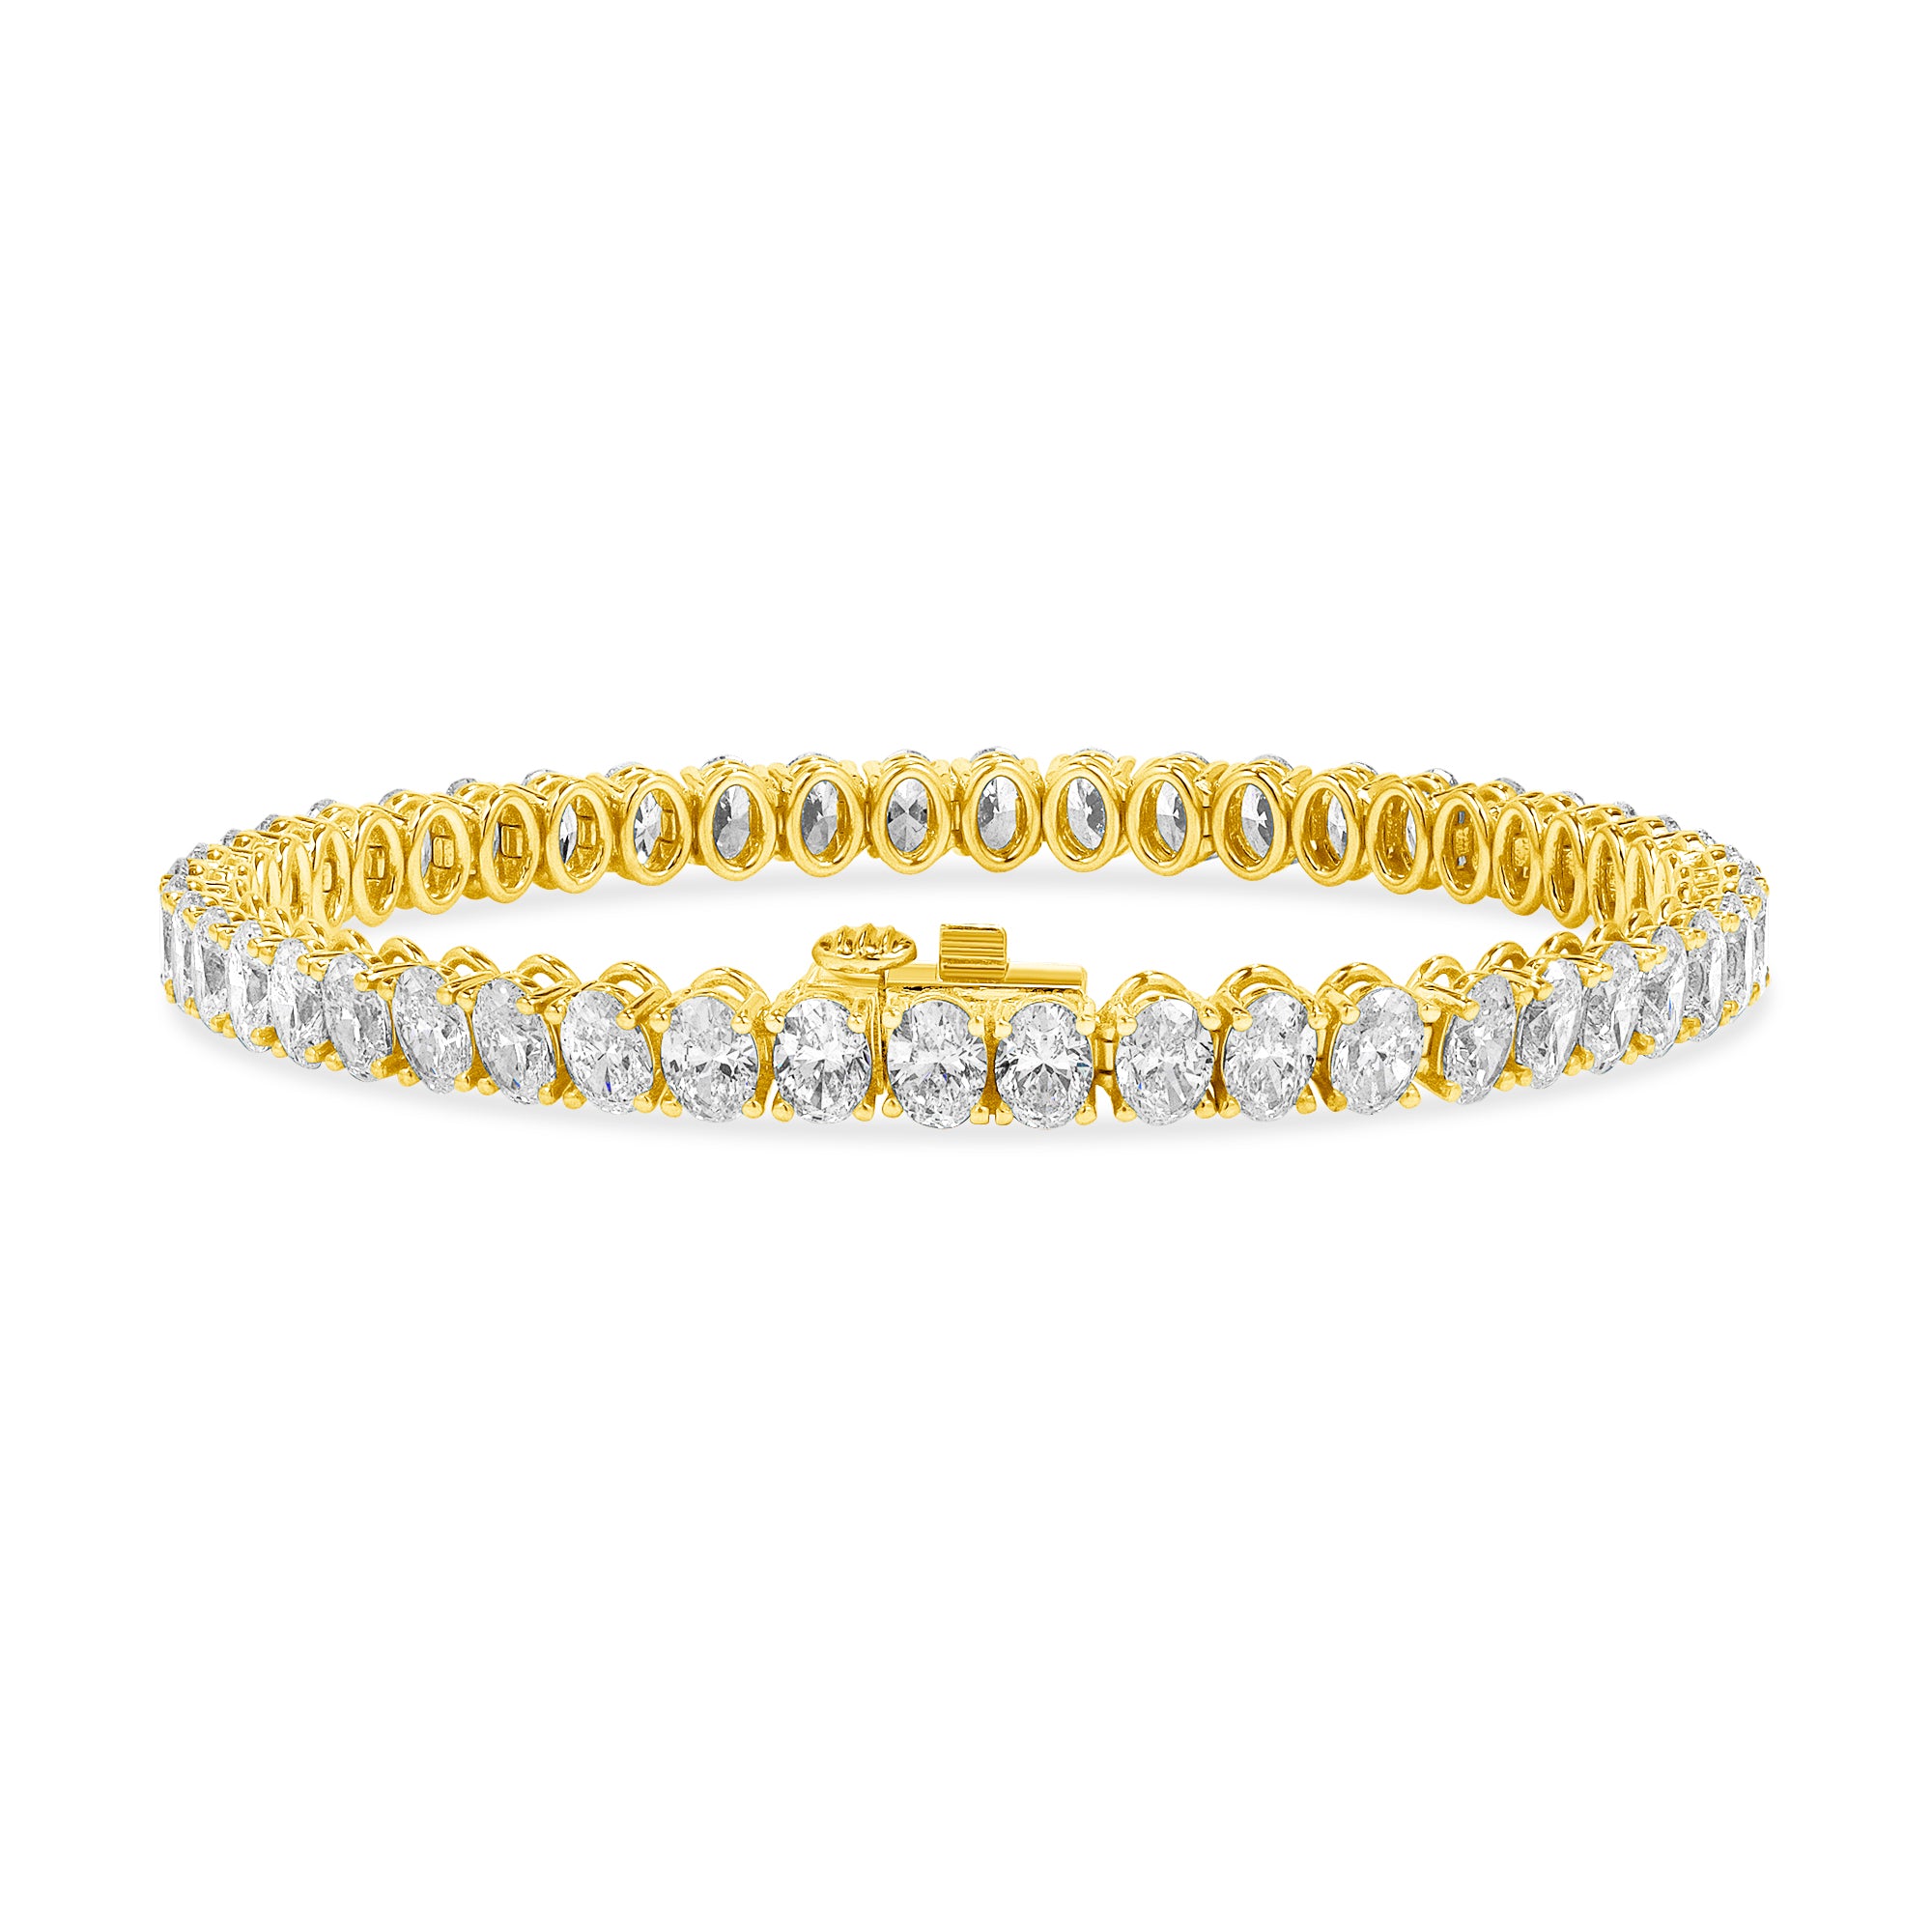 11.40ctw Oval Cut Diamond Tennis Bracelet in 18K Yellow Gold